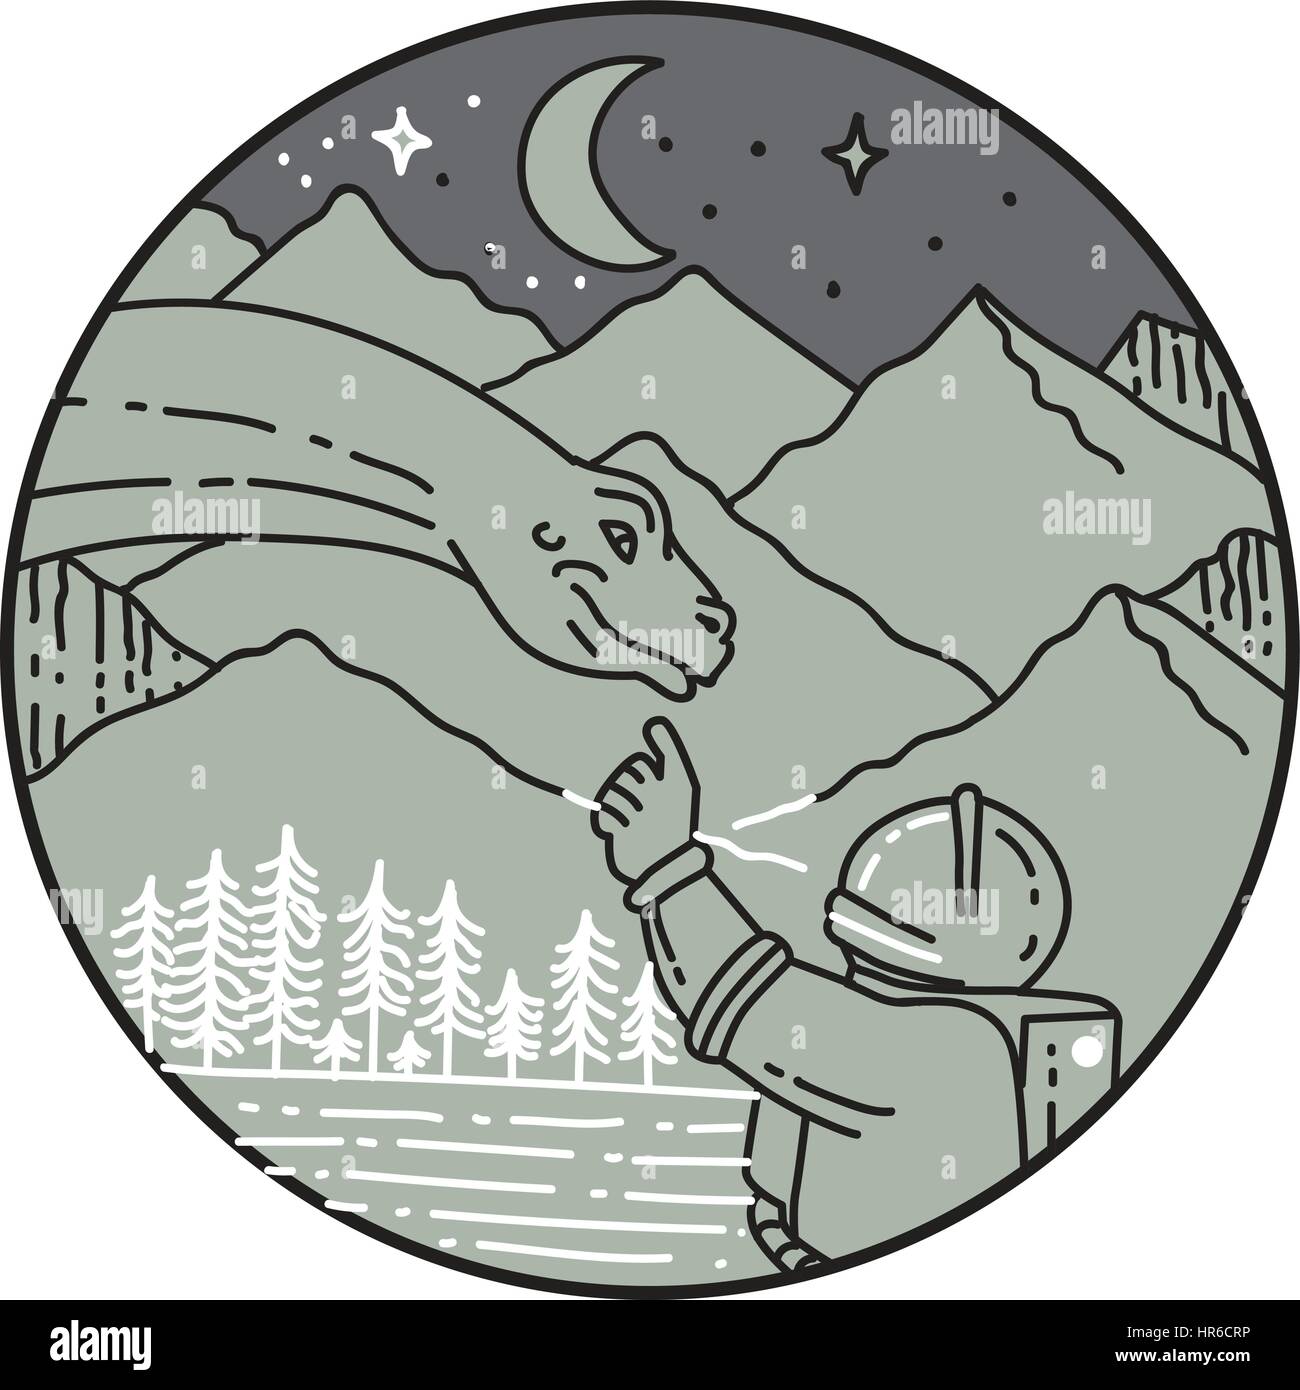 Style ligne mono illustration d'un astronaute de toucher la tête de dinosaure brontosaure mis à l'intérieur du cercle avec vue sur la montagne, la lune, les étoiles et les arbres dans le background Illustration de Vecteur